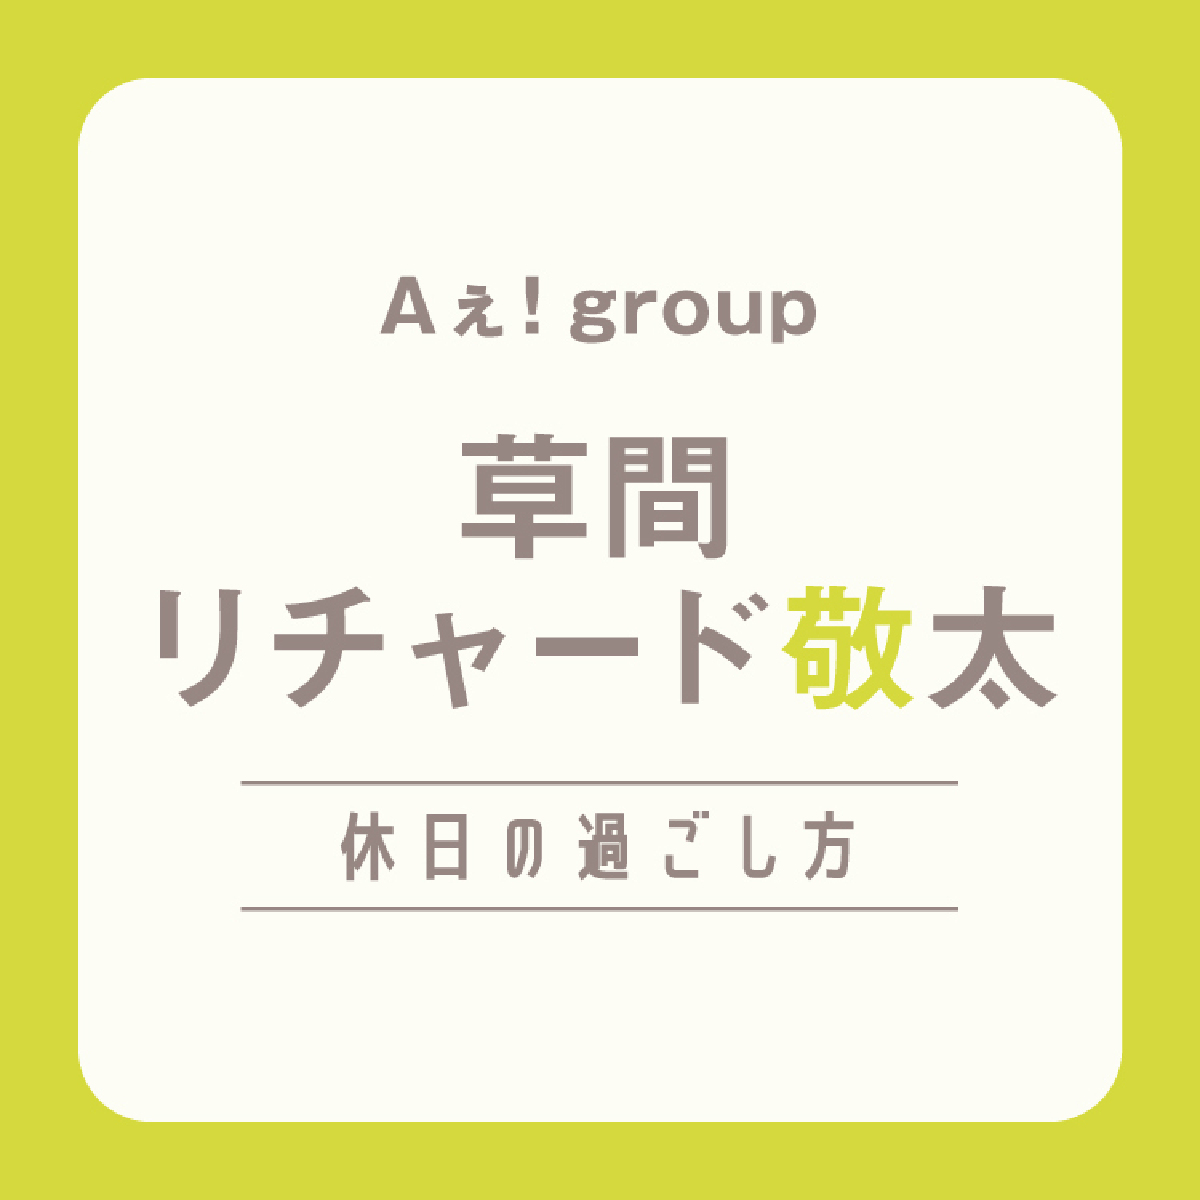 【Aぇ! group】草間リチャード敬太の休日は「もしデートするなら、当日集合してから過ごし方を決めたい」